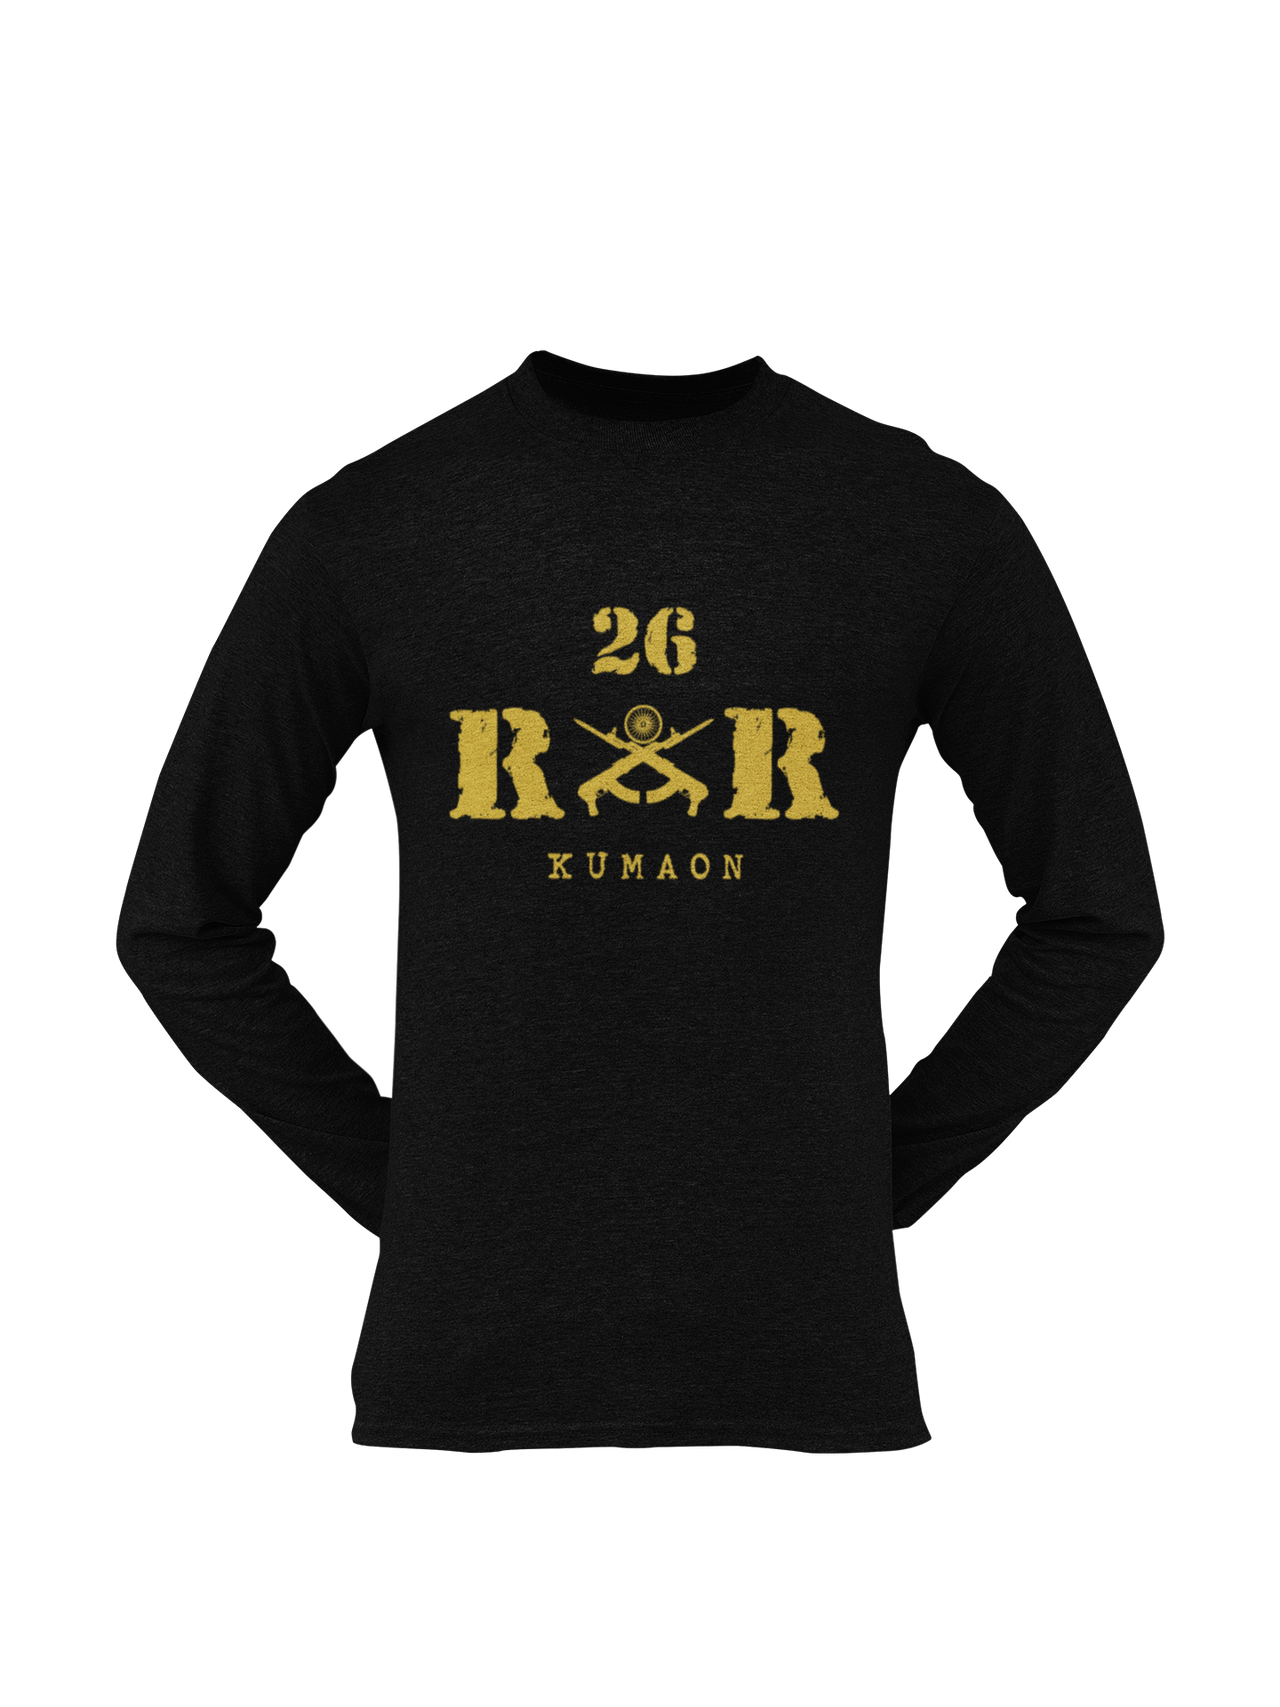 Rashtriya Rifles T-shirt - 26 RR Kumaon (Men)